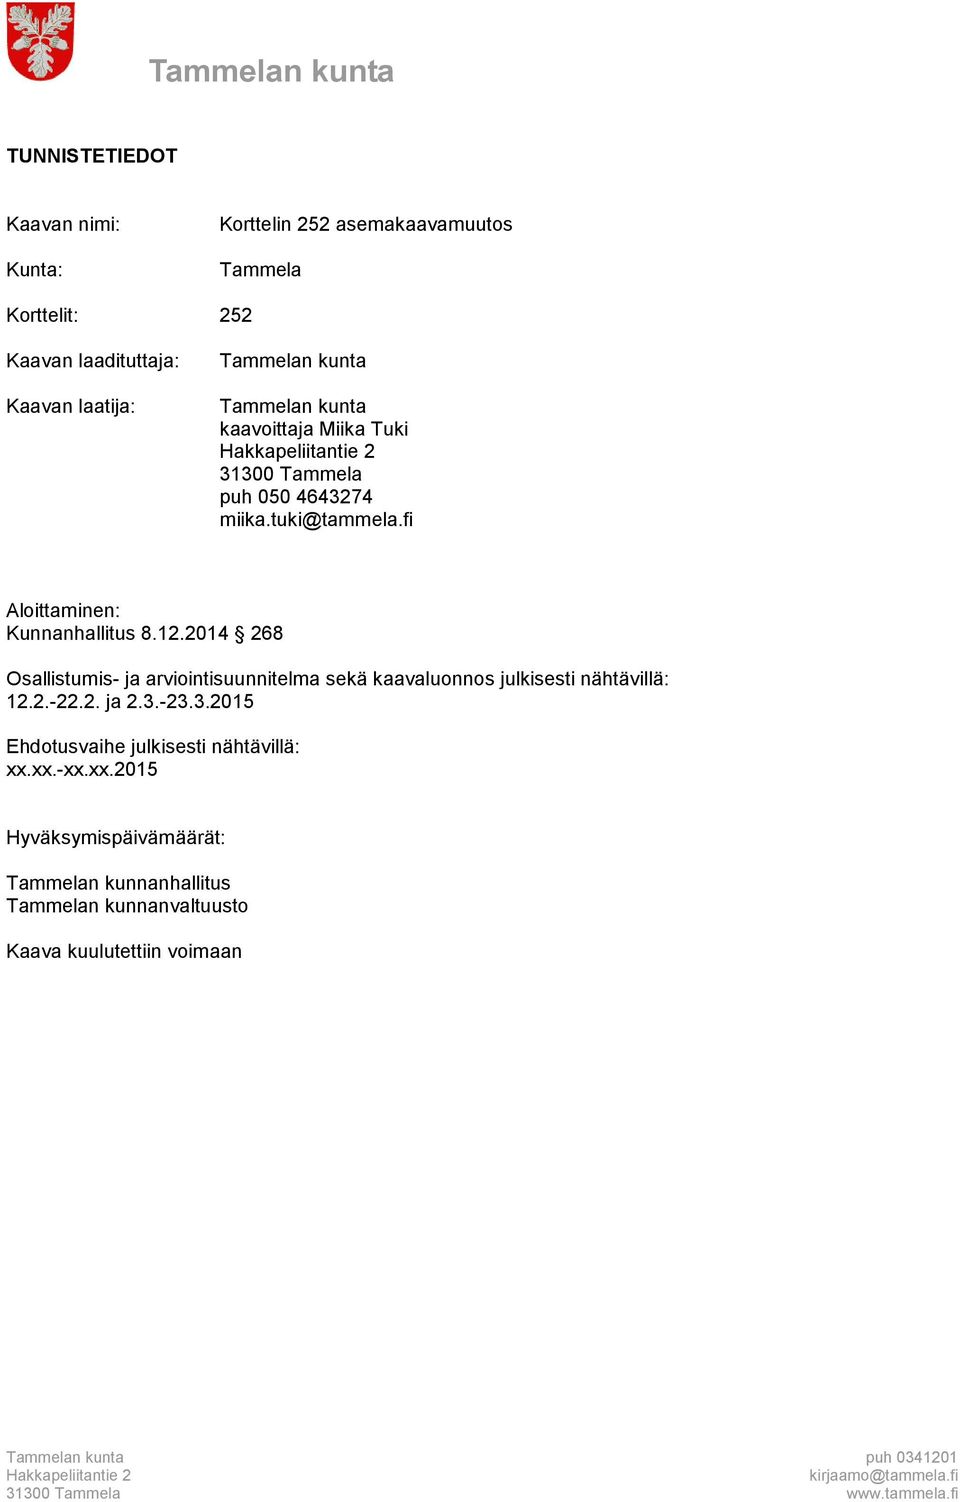 fi Aloittaminen: Kunnanhallitus 8.12.2014 268 Osallistumis- ja arviointisuunnitelma sekä kaavaluonnos julkisesti nähtävillä: 12.2.-22.